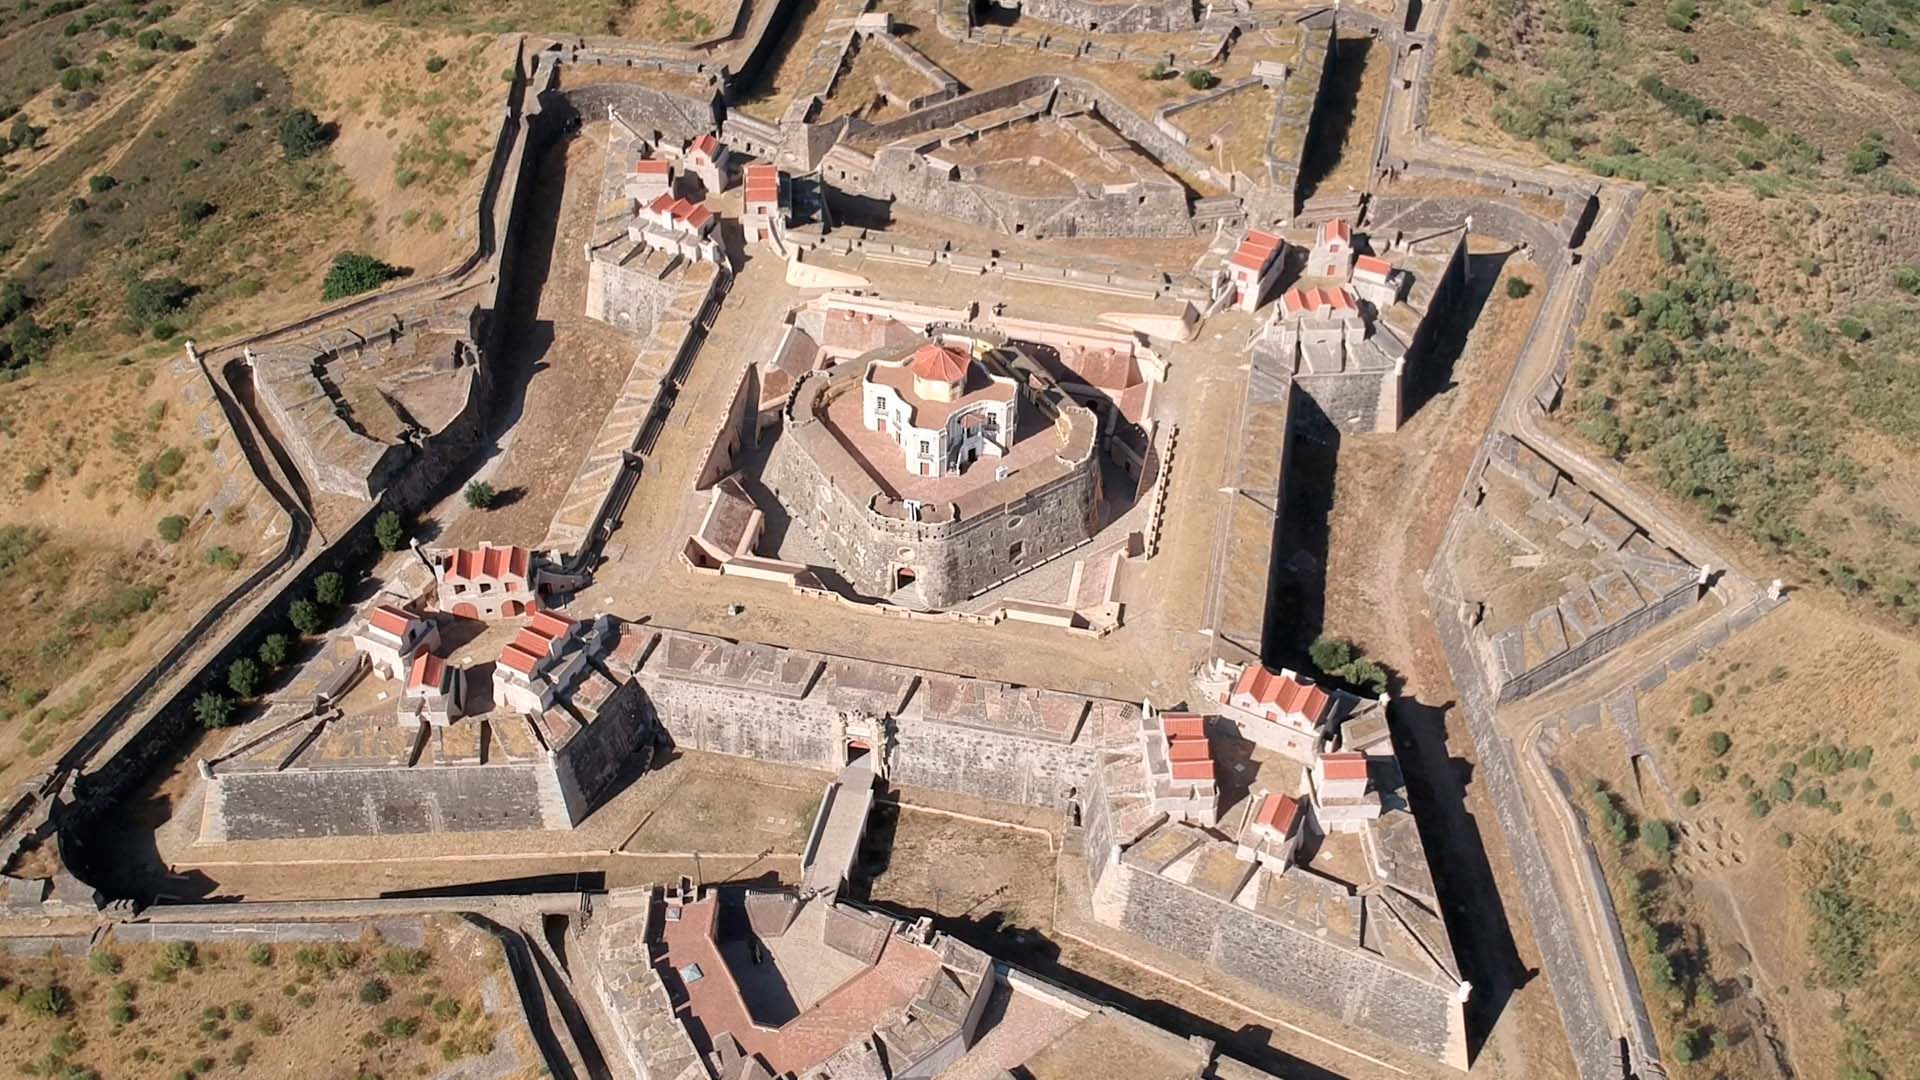 Sehenswürdigkeiten in Elvas: Größte Festung Europas?